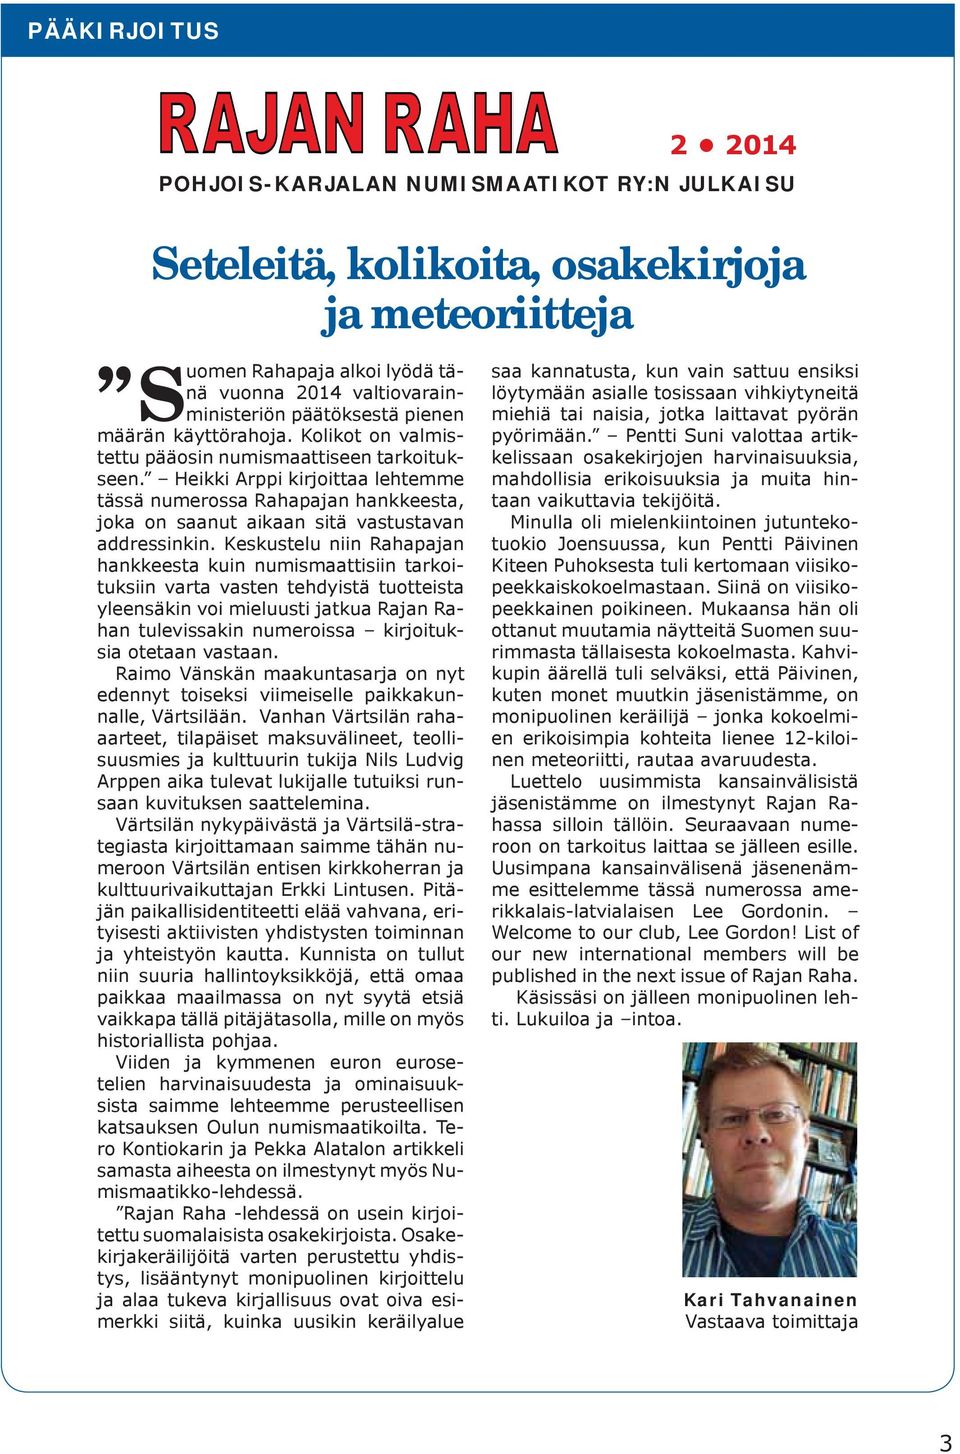 Heikki Arppi kirjoittaa lehtemme tässä numerossa Rahapajan hankkeesta, joka on saanut aikaan sitä vastustavan addressinkin.